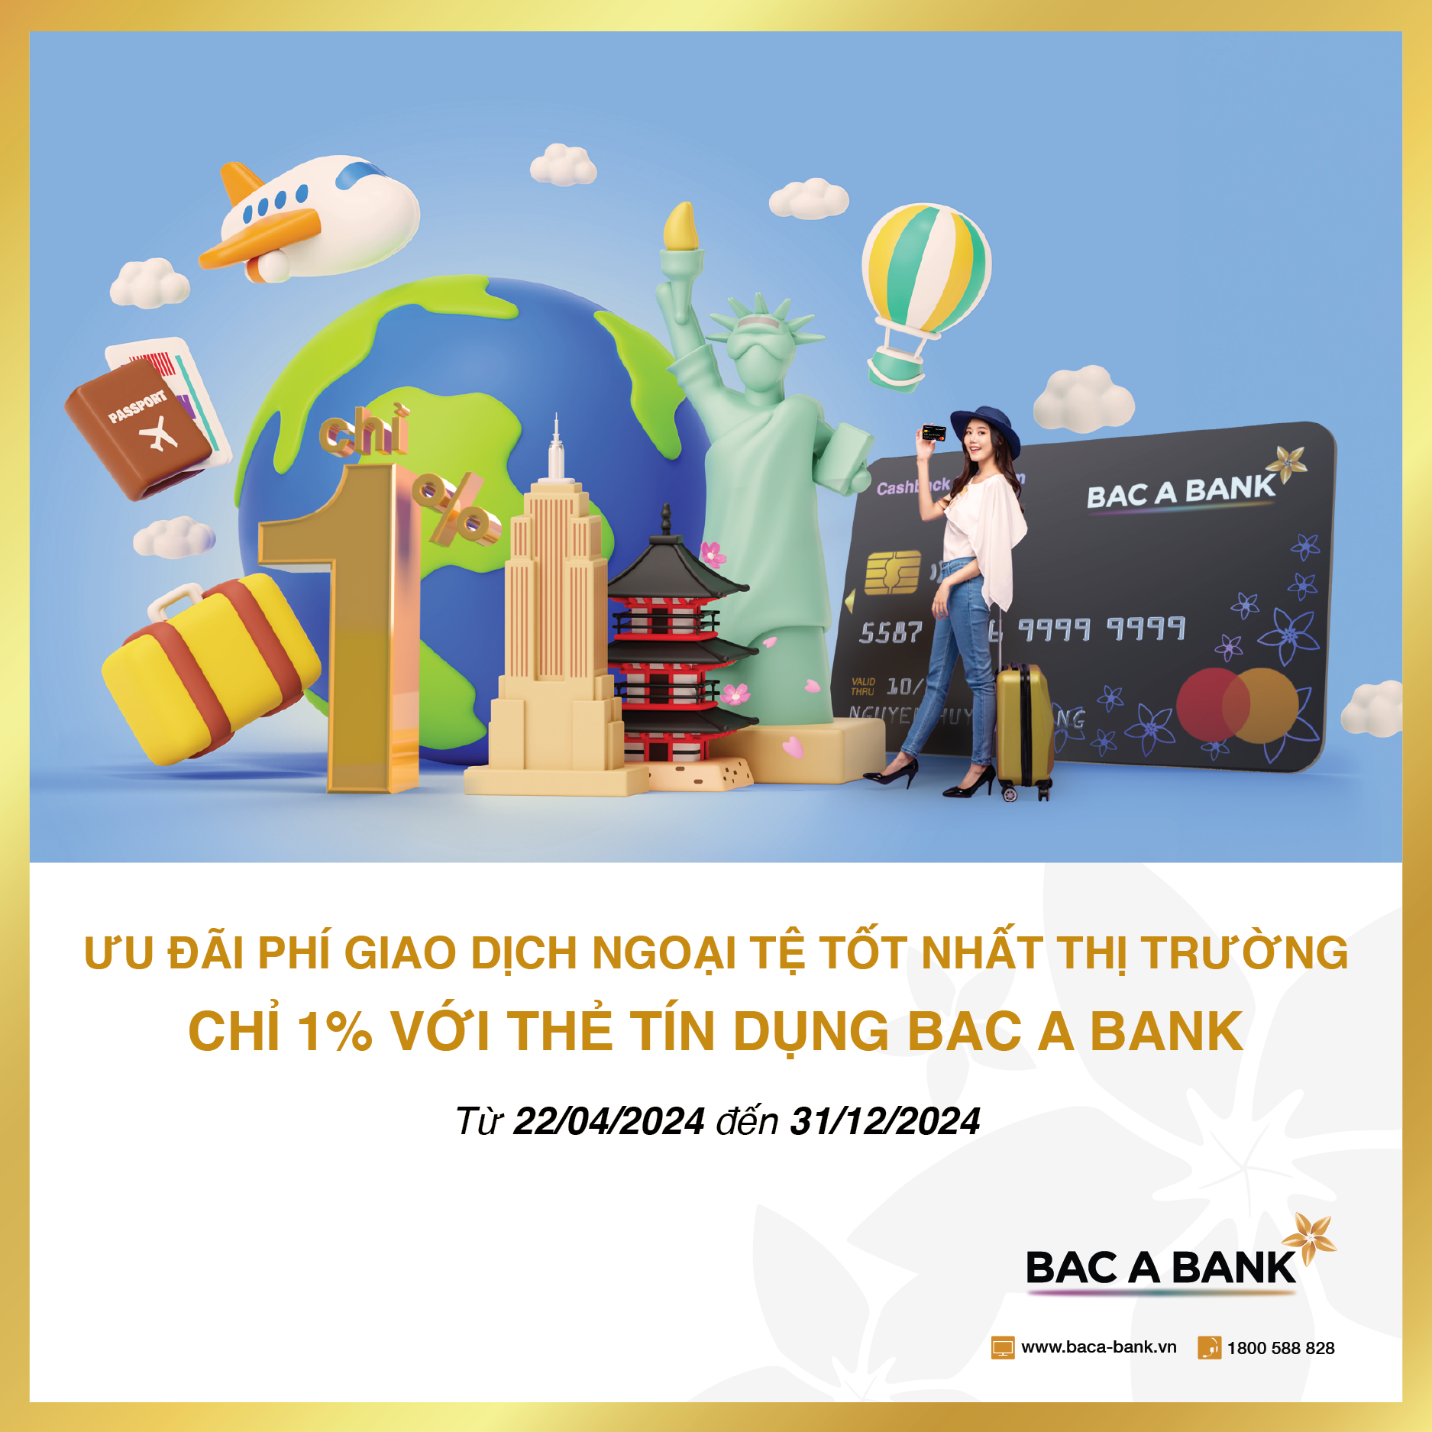 Áp phí giao dịch ngoại tệ chỉ 1%, thẻ tín dụng quốc tế bac A BANK “ghi điểm” với người dùng - 1